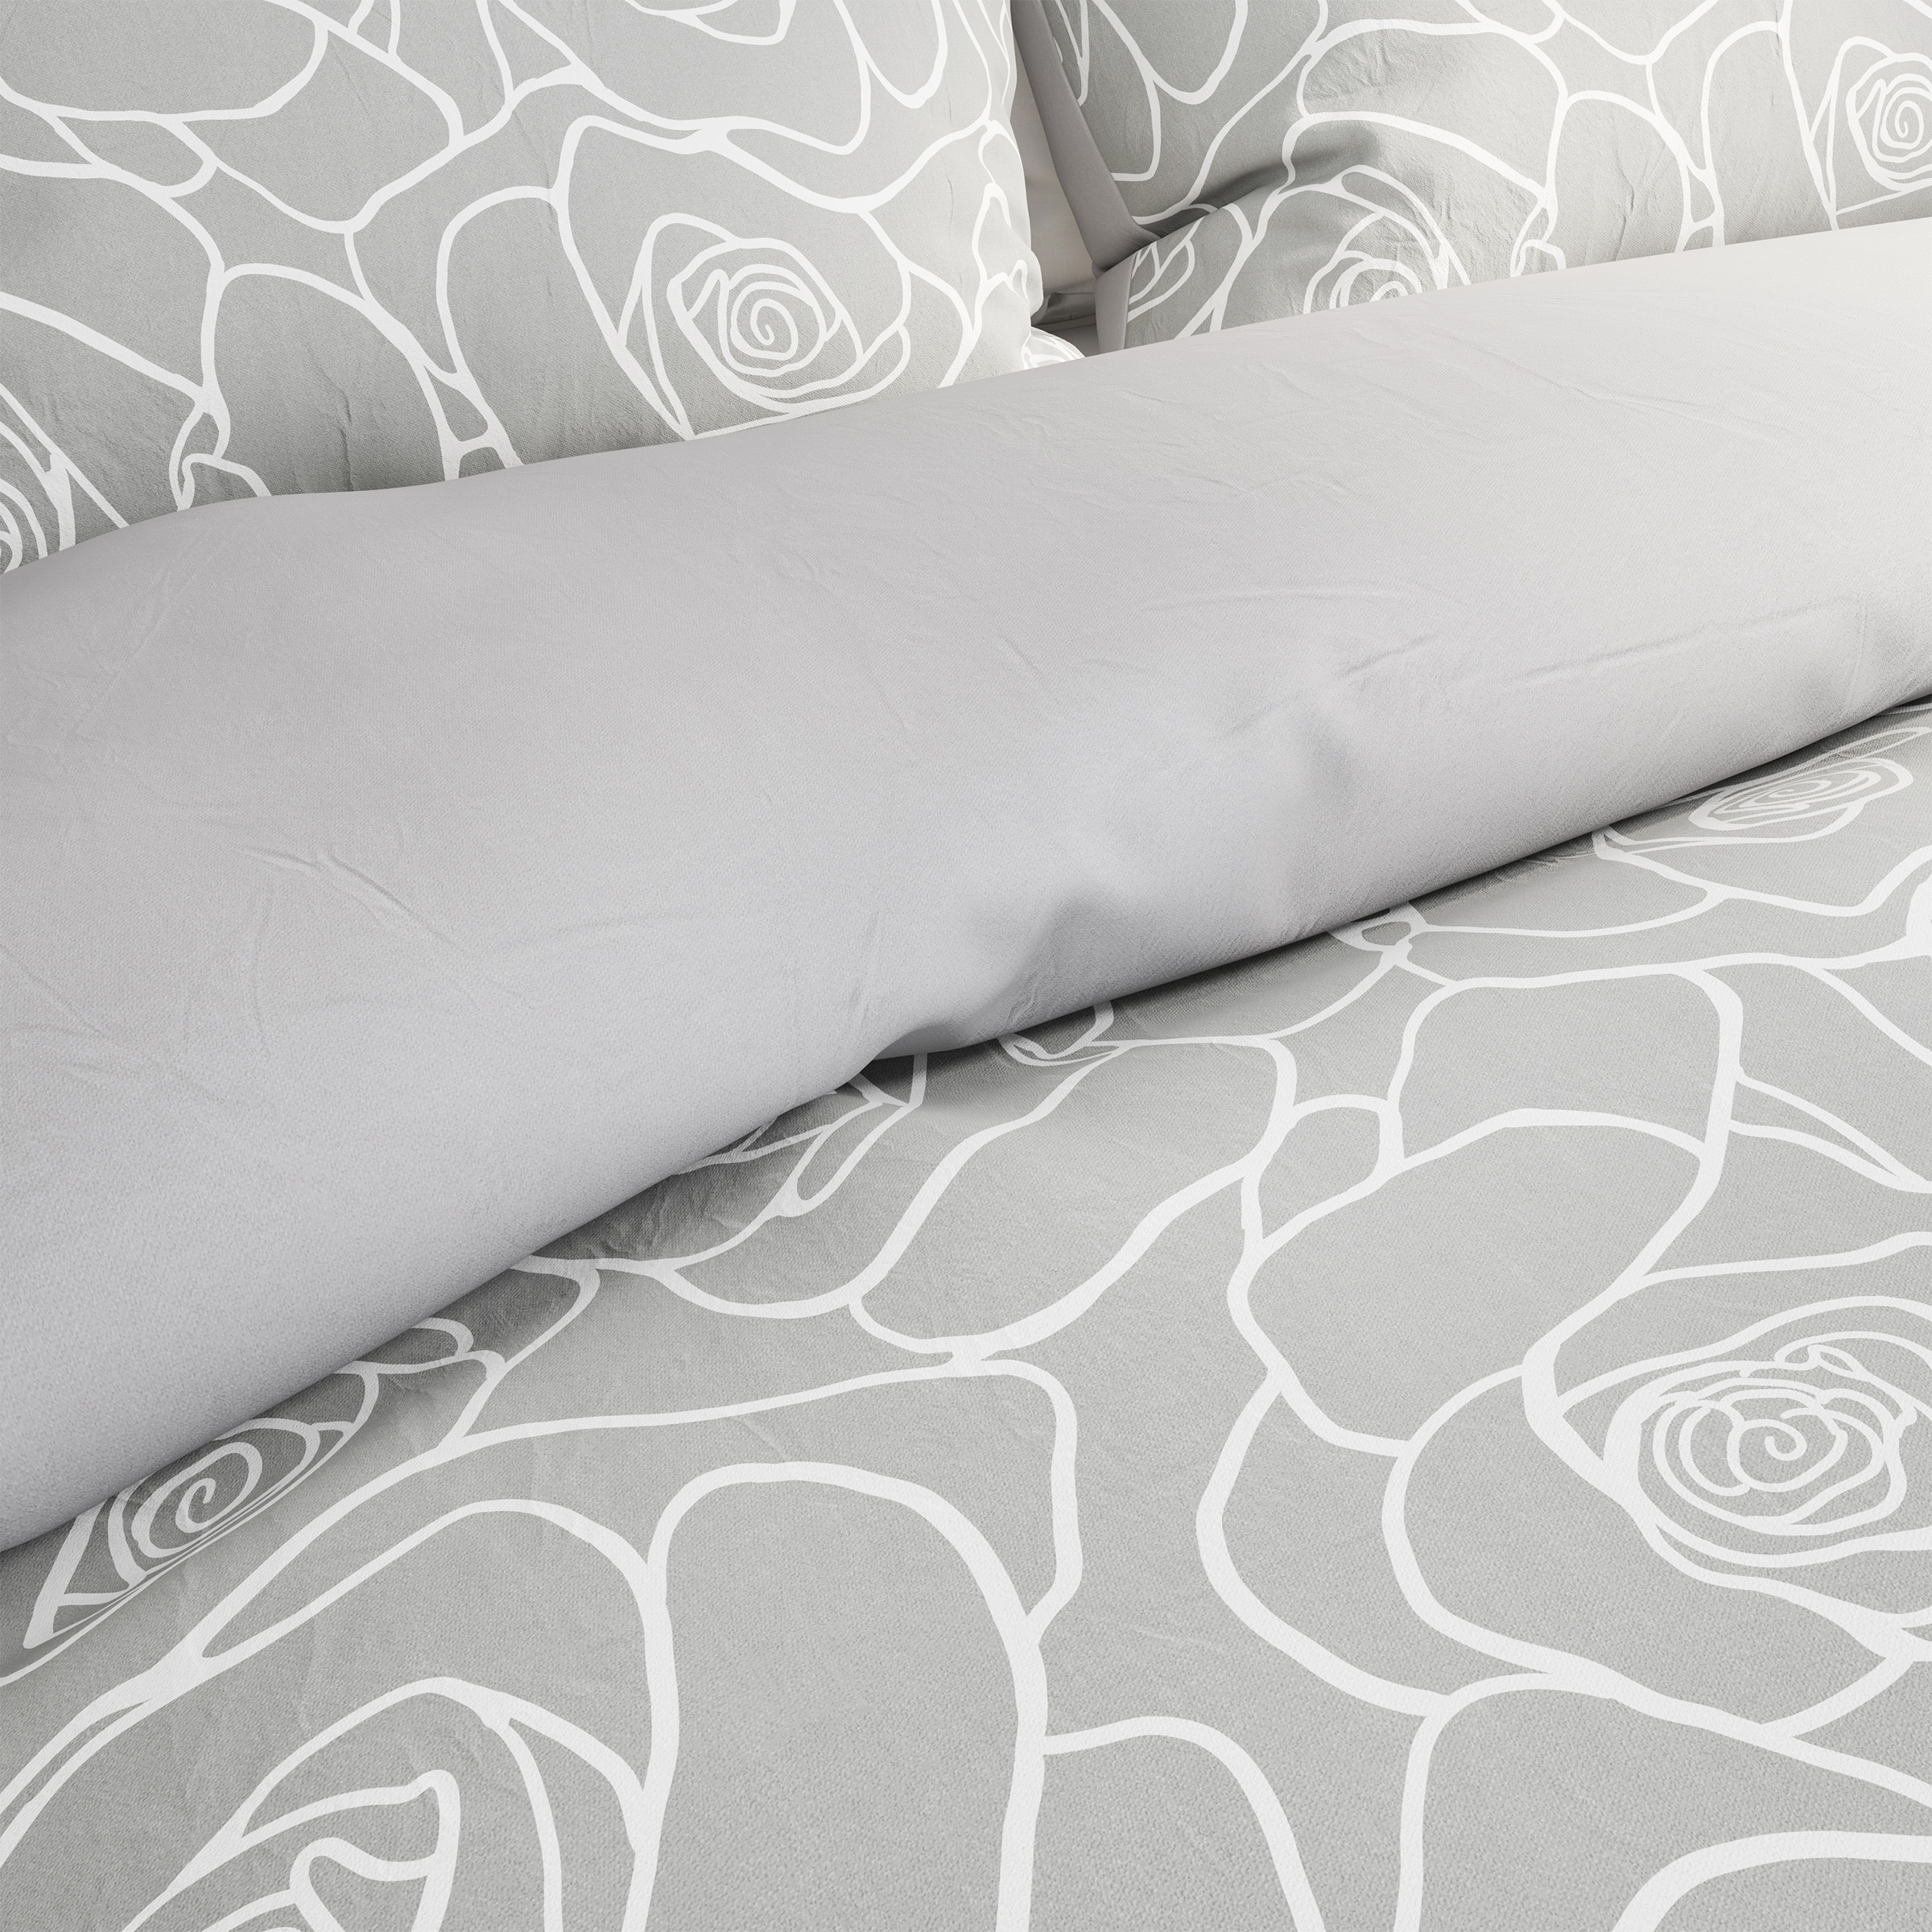 3-Piece Comforter Set â Hypoallergenic Microfiber Bed Of Roses Floral Print Down Alternative All-Season Blanket - King